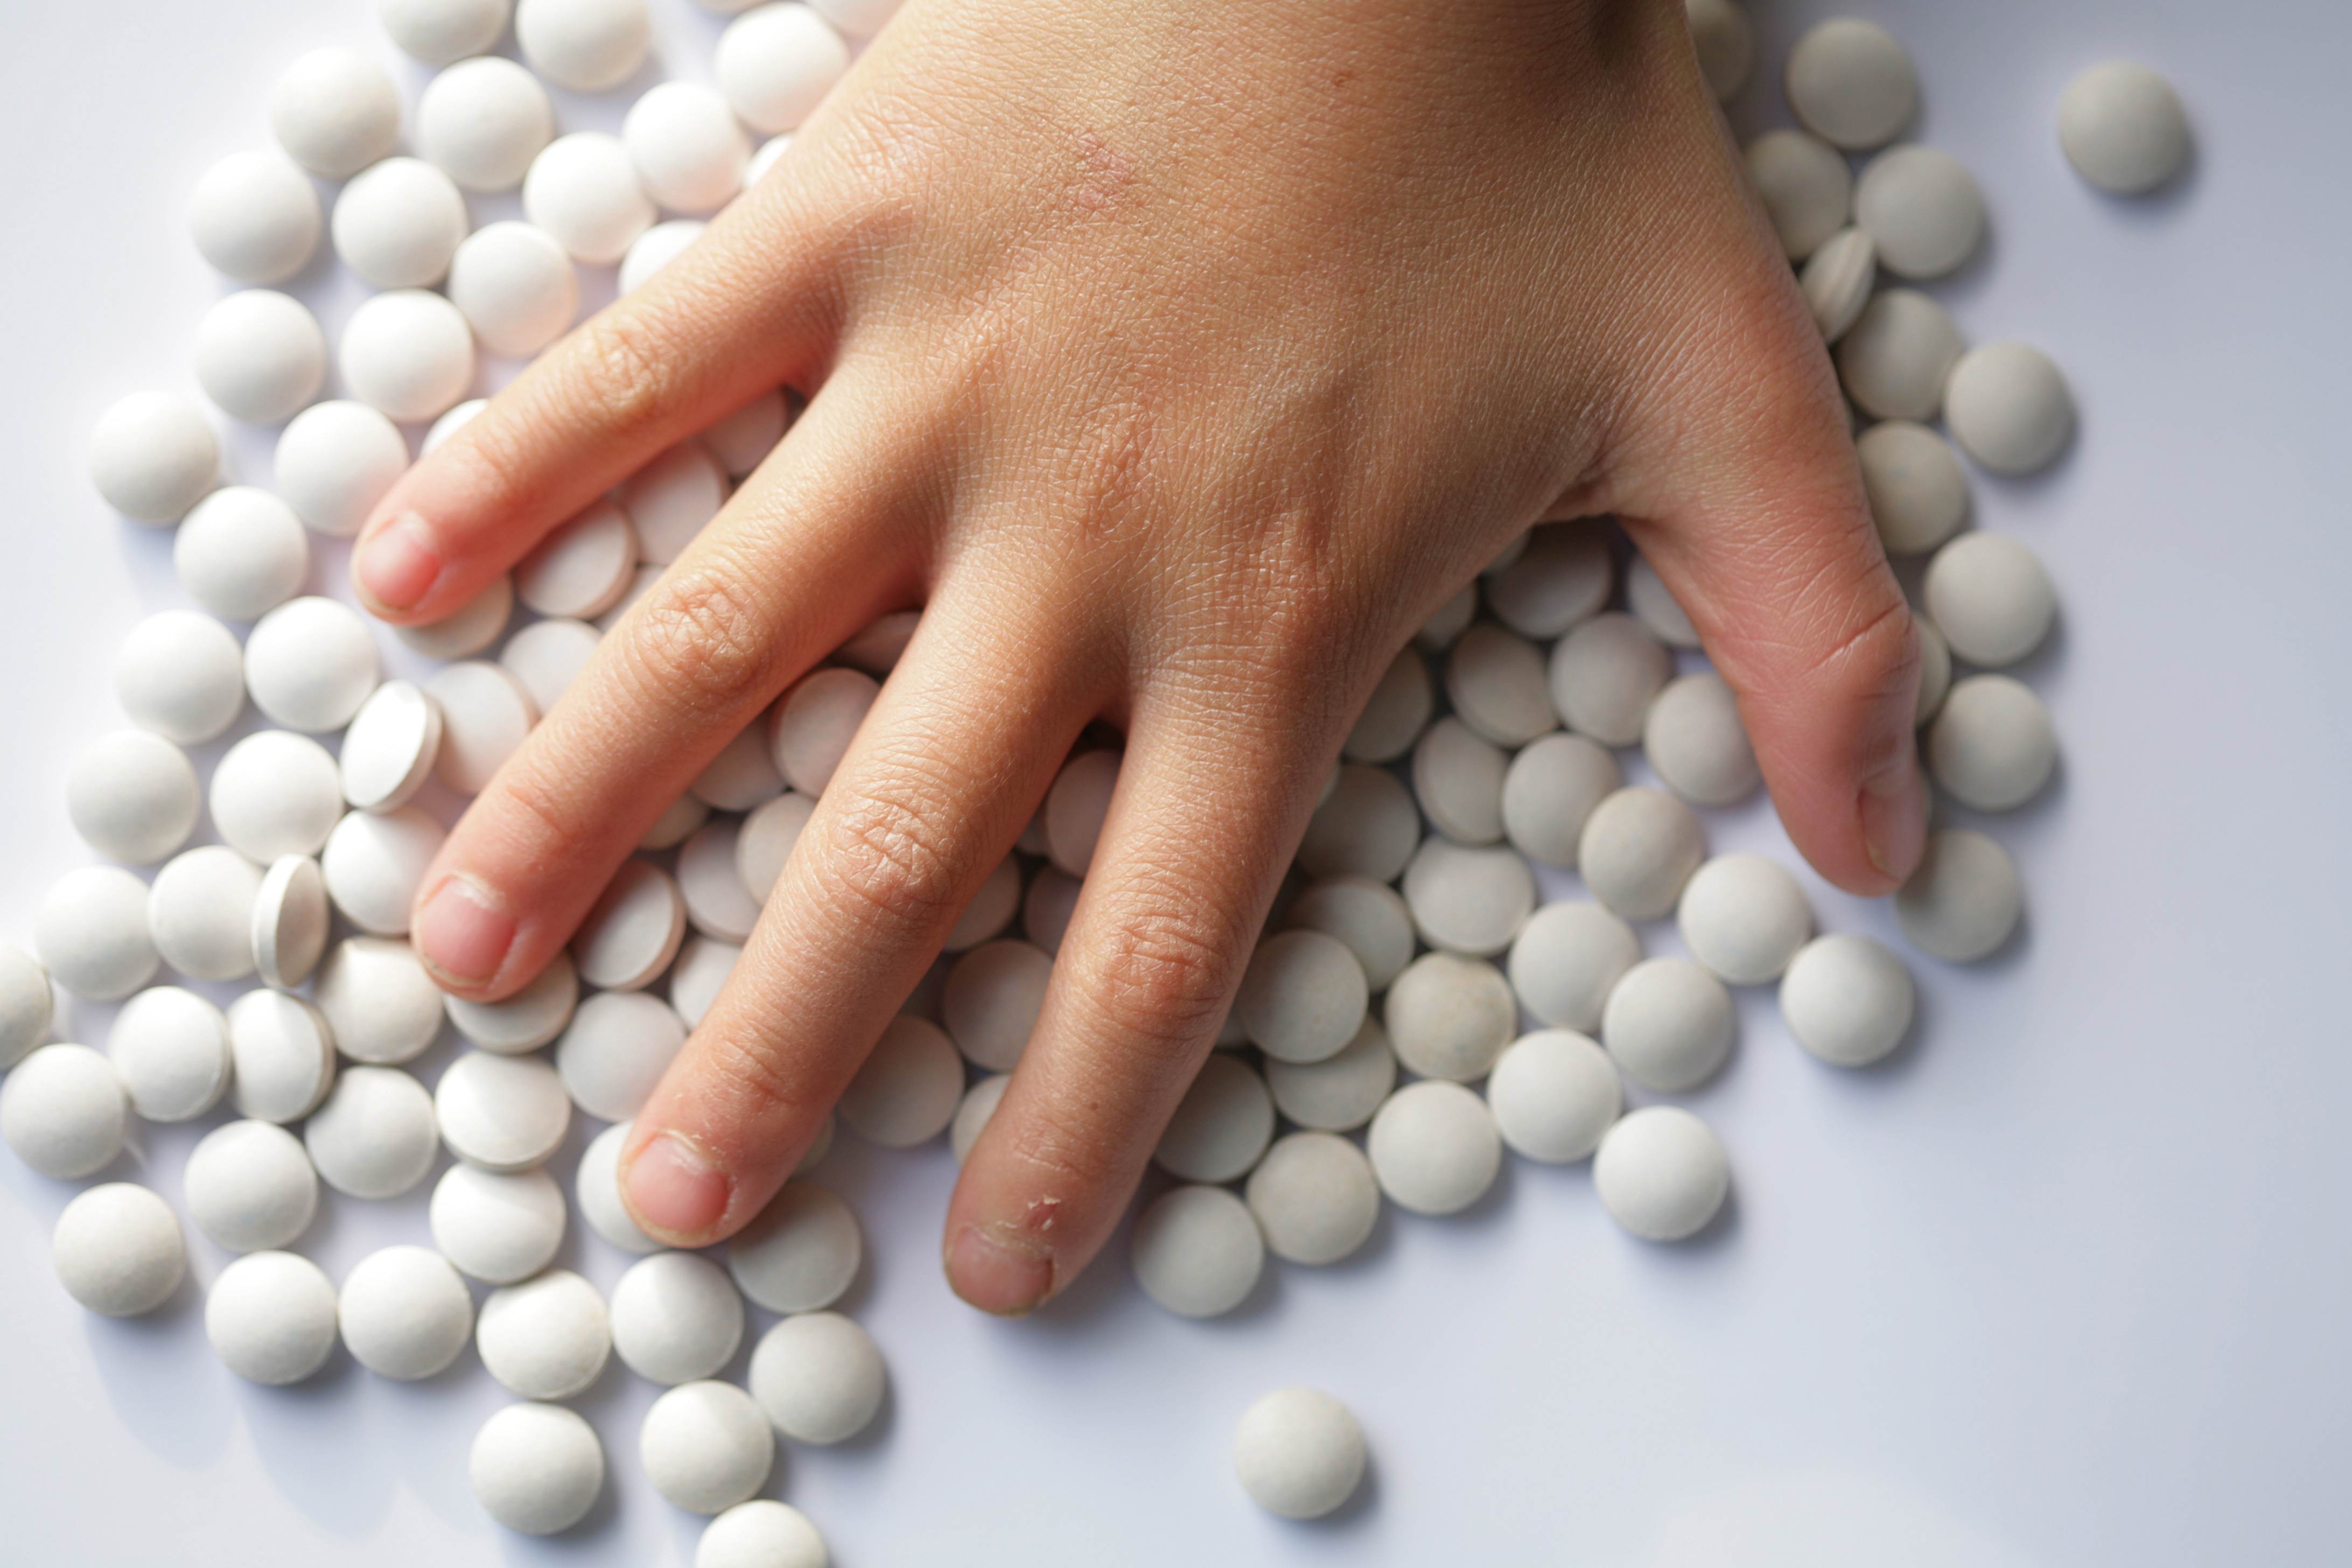 Effetti collaterali del paracetamolo: diminuire il dosaggio nei bambini?